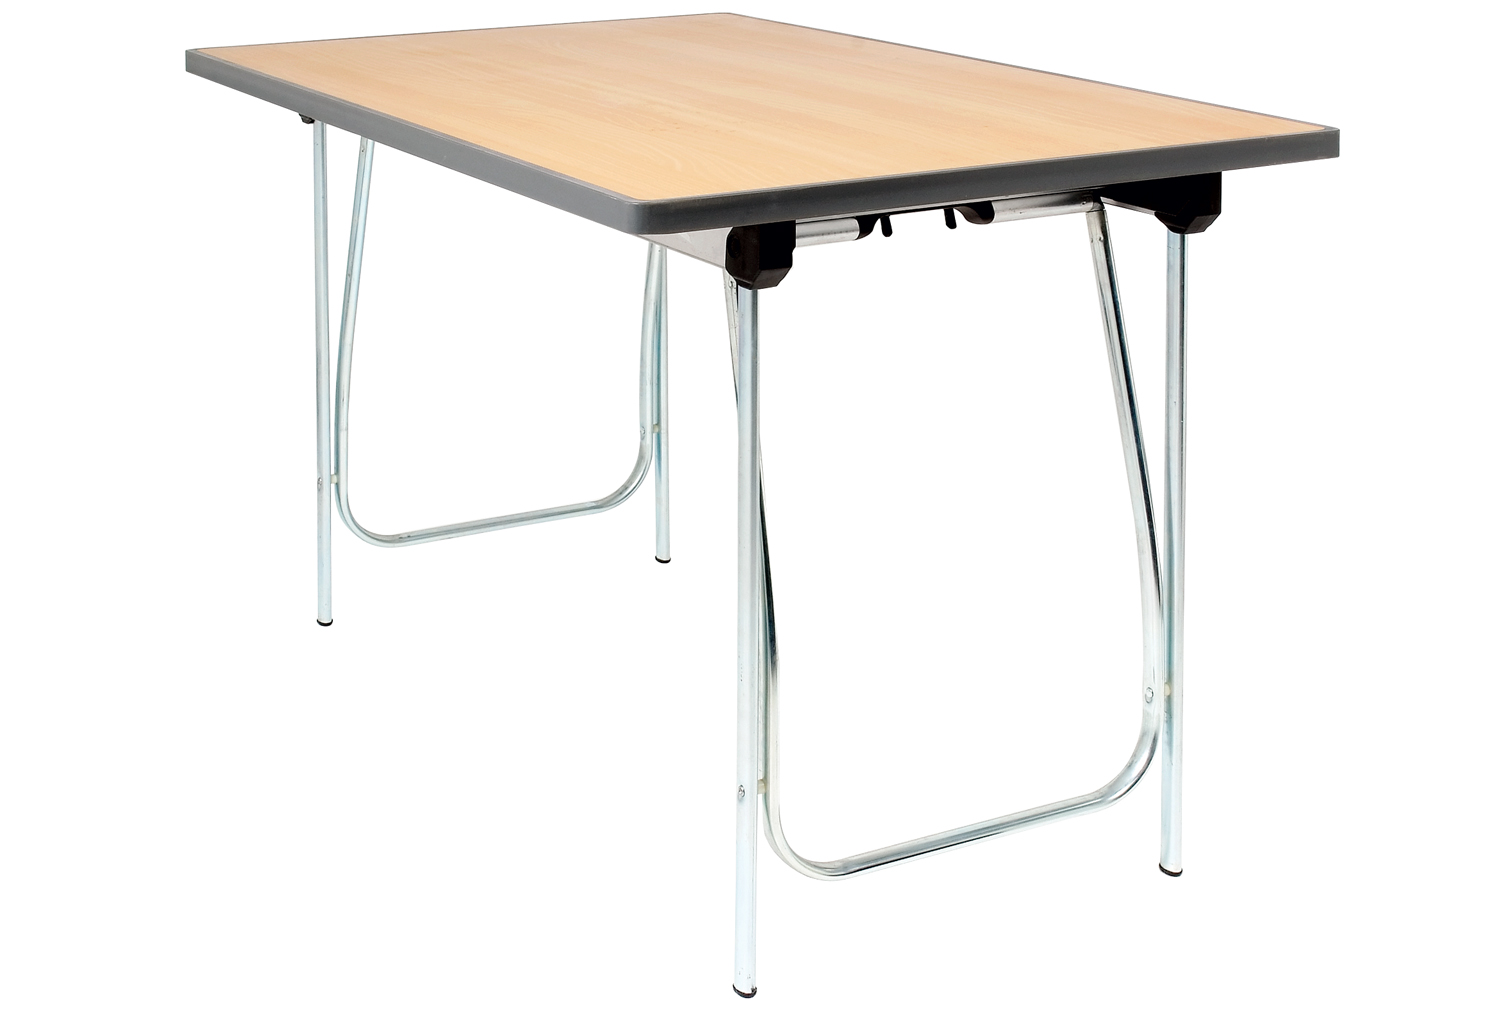 Gopak Vantage Folding Tables, 122wx61dx76h (cm), Teak